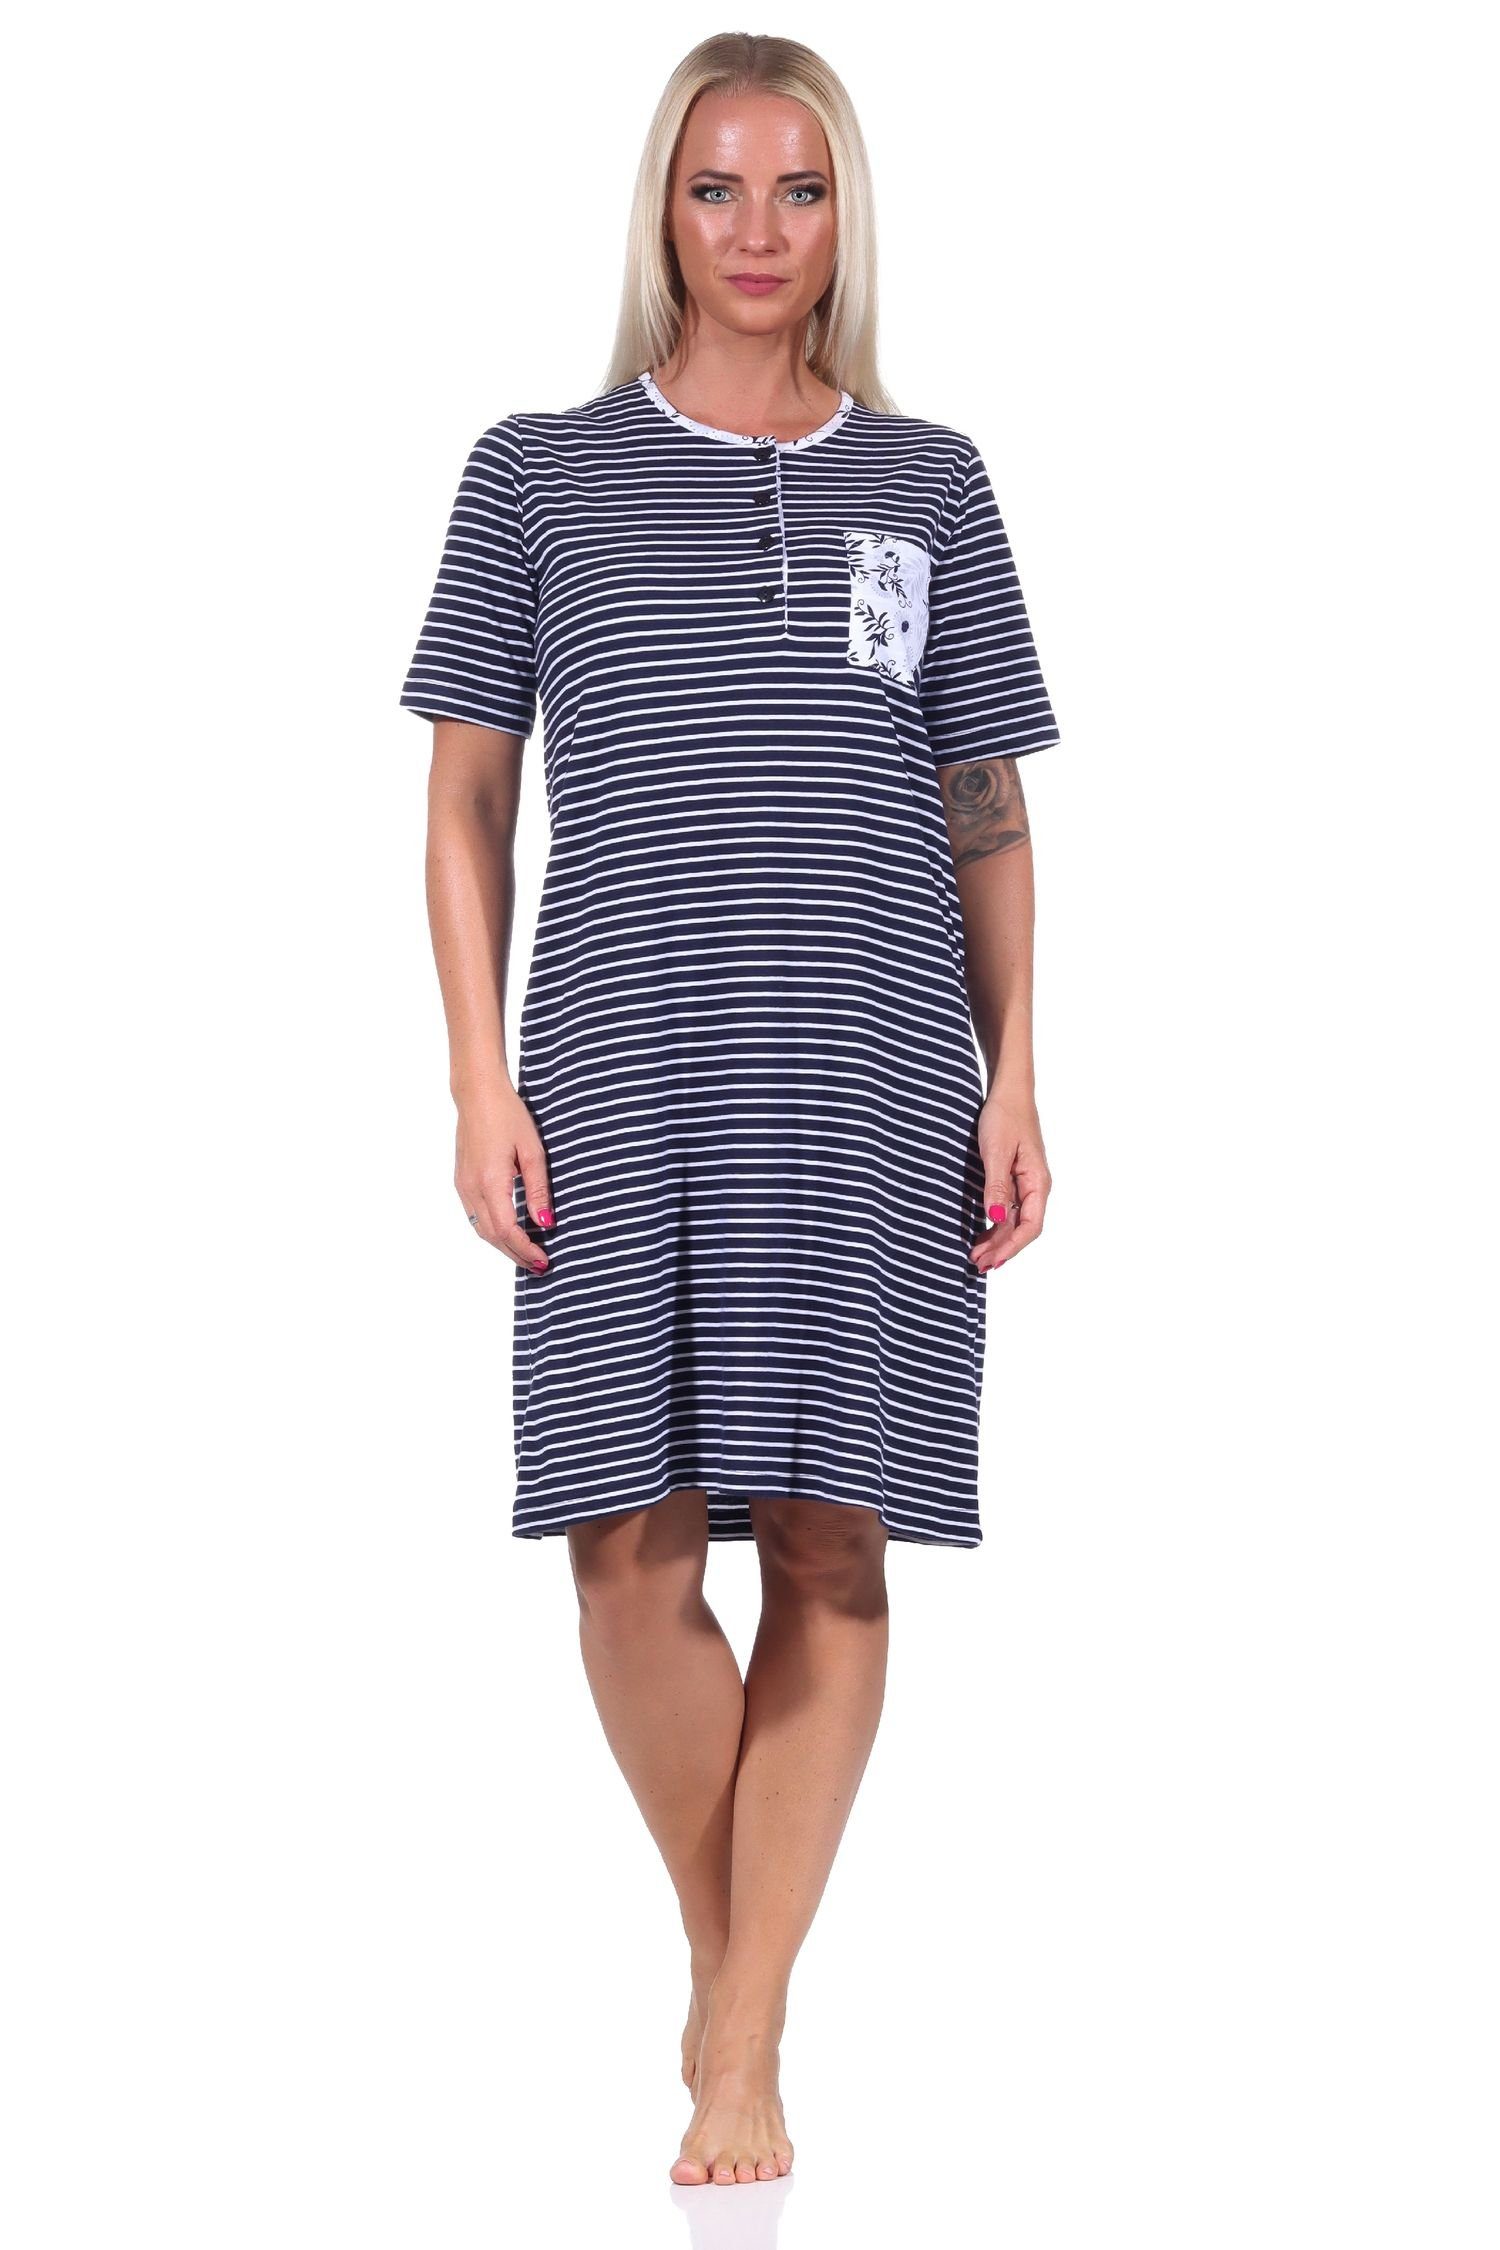 Normann Nachthemd Damen Hals kurzarm Knopfleiste mit am Nachthemd Streifenoptik in marine